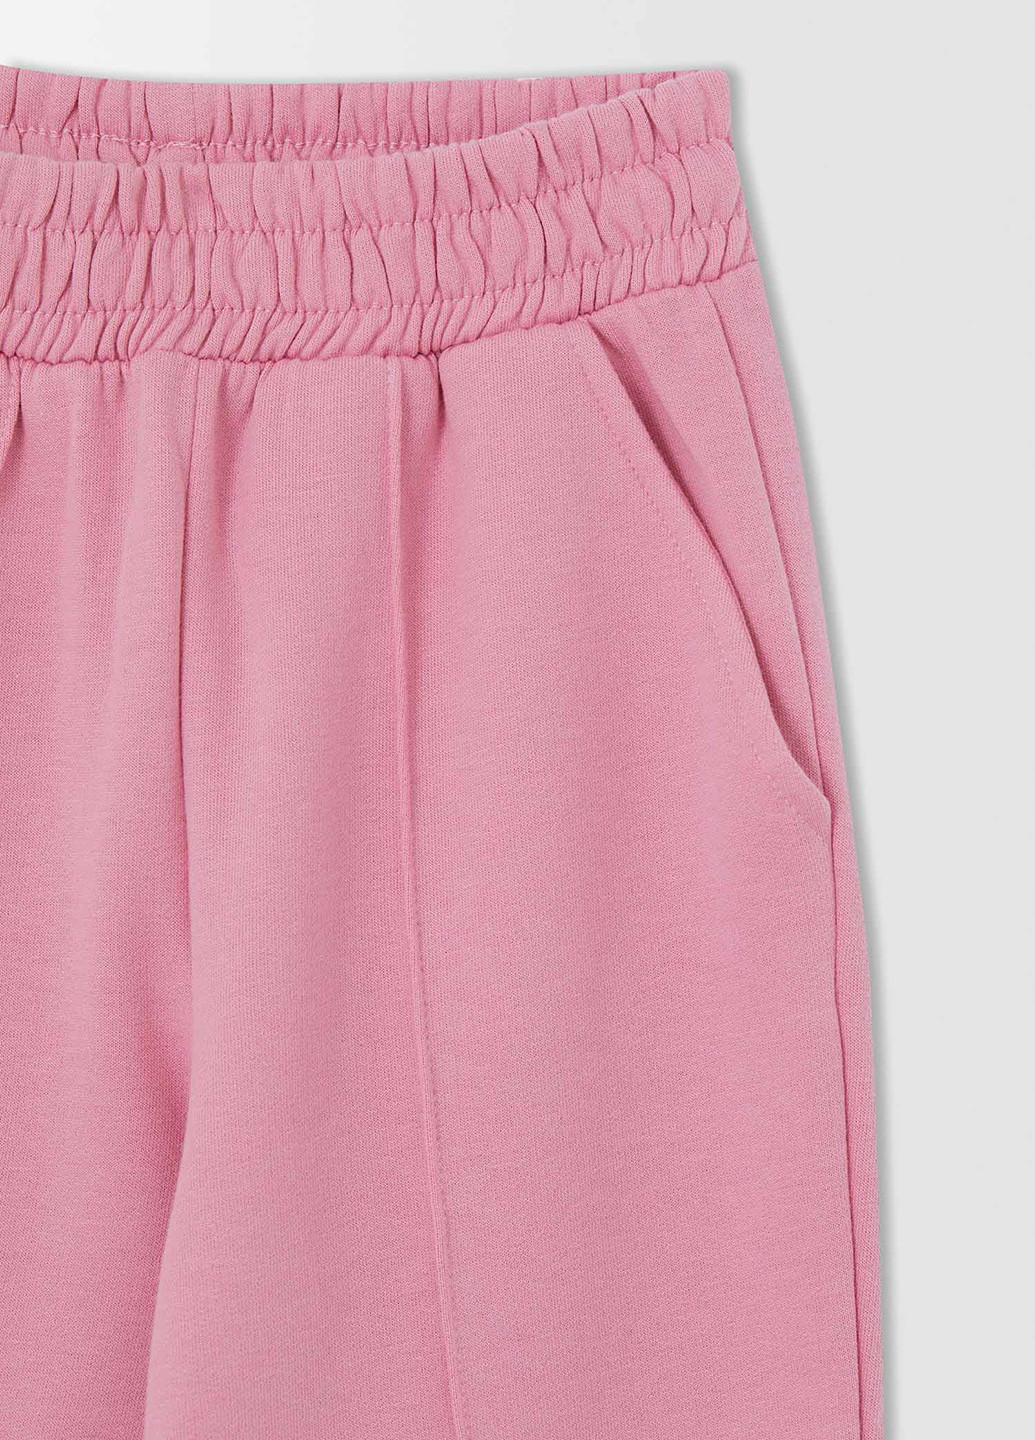 Светло-розовые спортивные демисезонные джоггеры брюки DeFacto